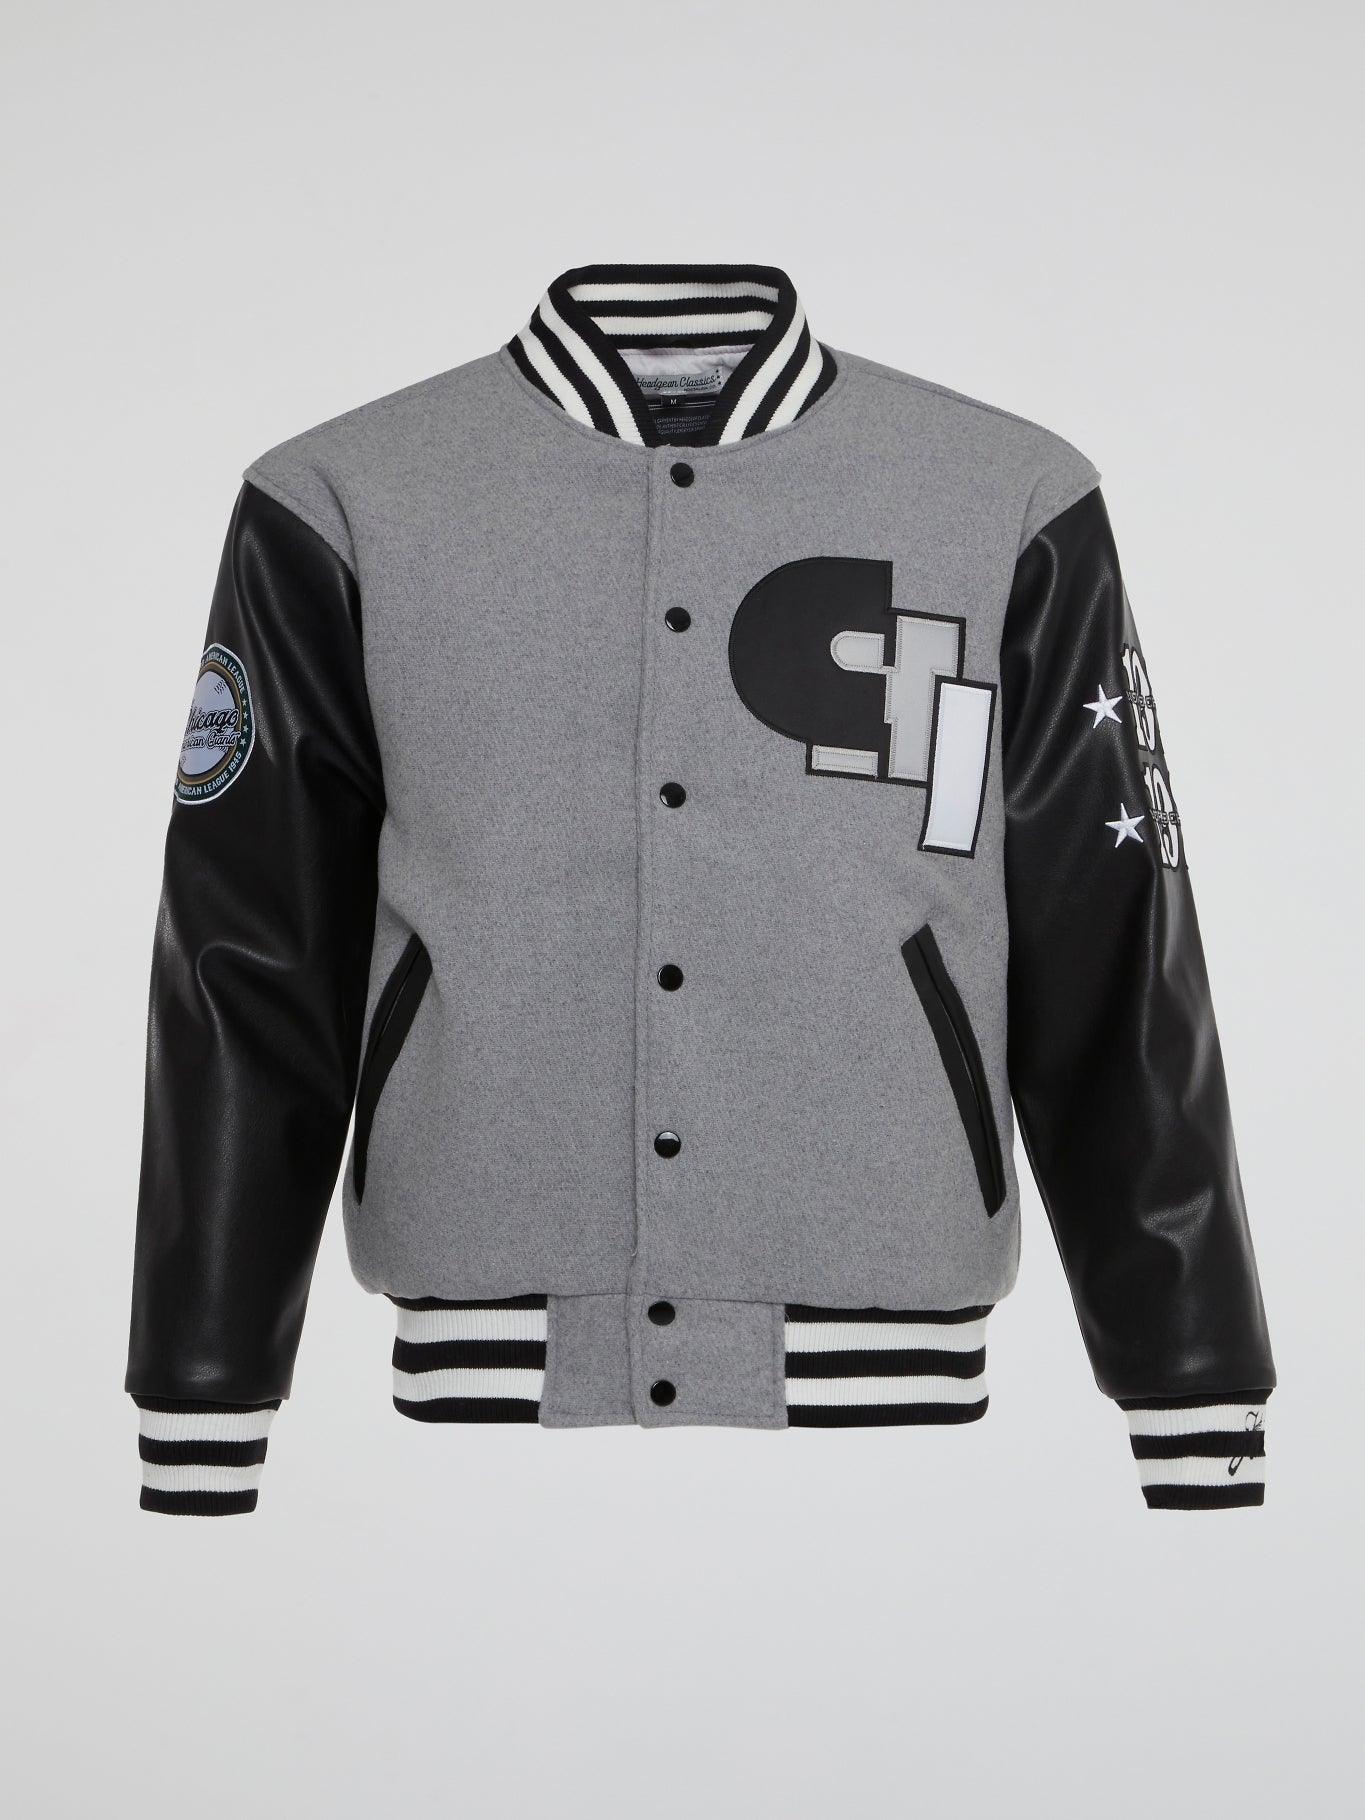 Chicago American Giants Varsity Jacket Grey - B-Hype Society